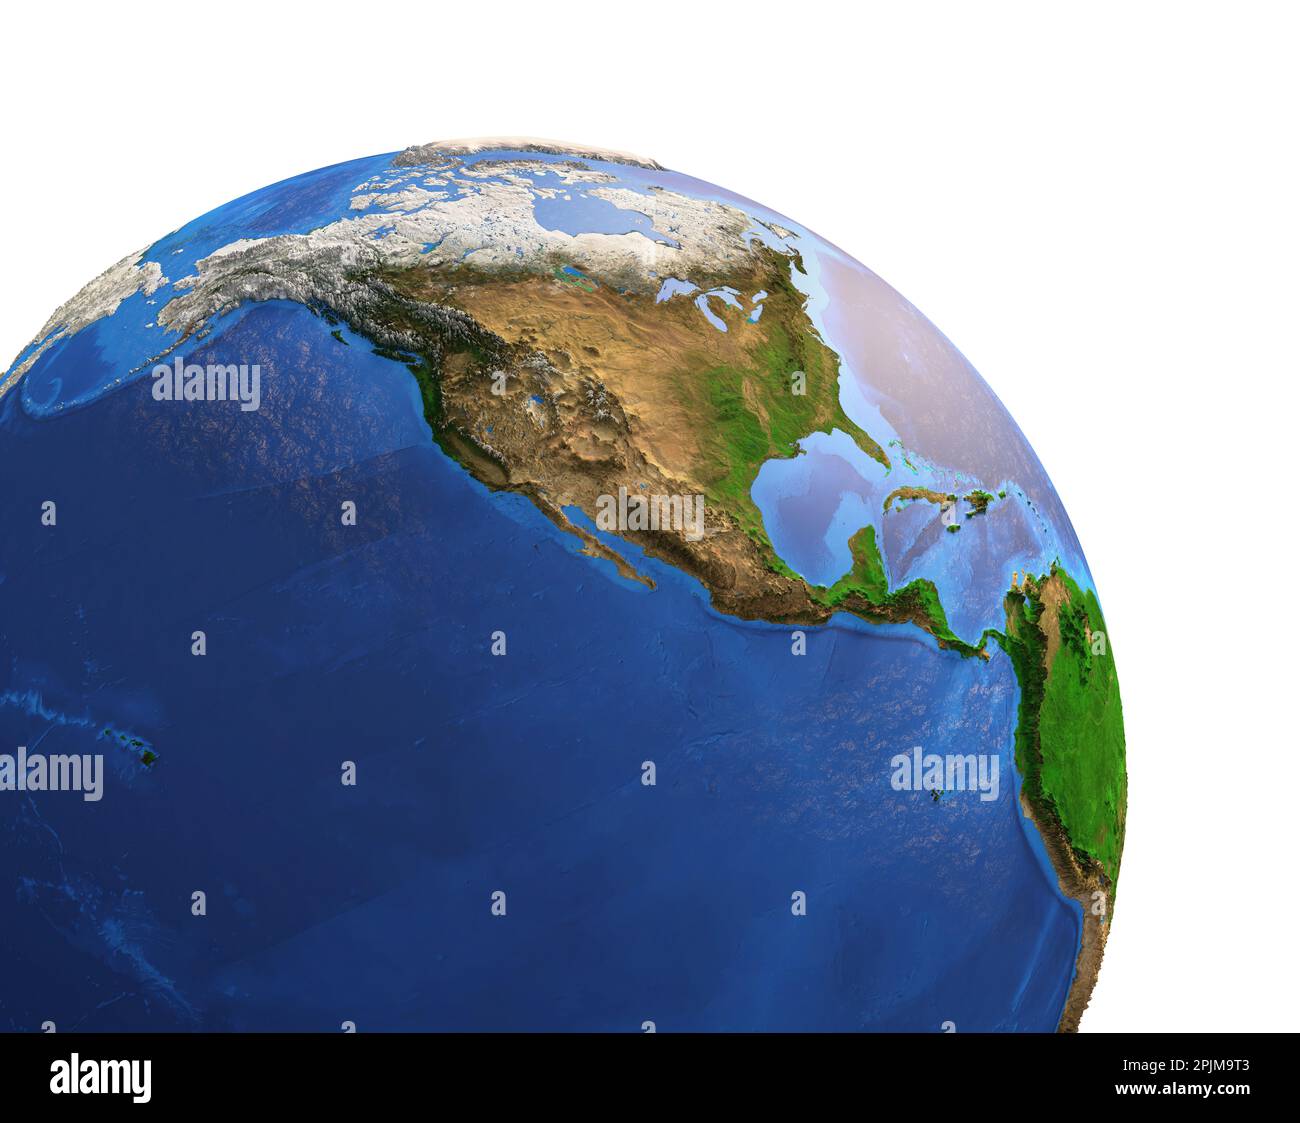 Hochauflösende Satellitenansicht des Planeten Erde mit Schwerpunkt auf Nordamerika, Alaska, Kanada, den USA und Mexiko – Elemente, die von der NASA bereitgestellt werden Stockfoto